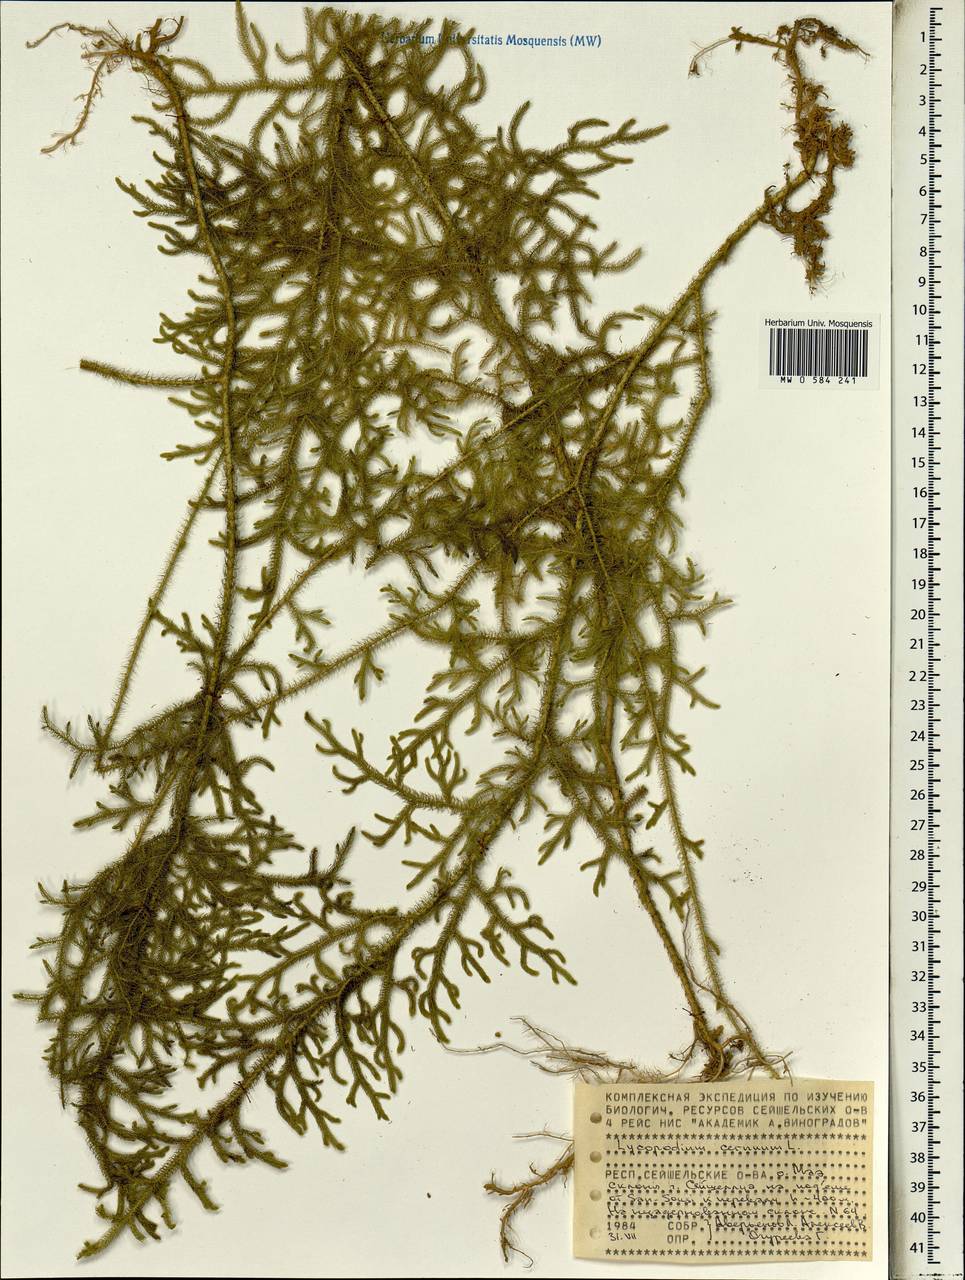 Palhinhaea cernua (L.) Vasc. & Franco, Африка (AFR) (Сейшельские острова)